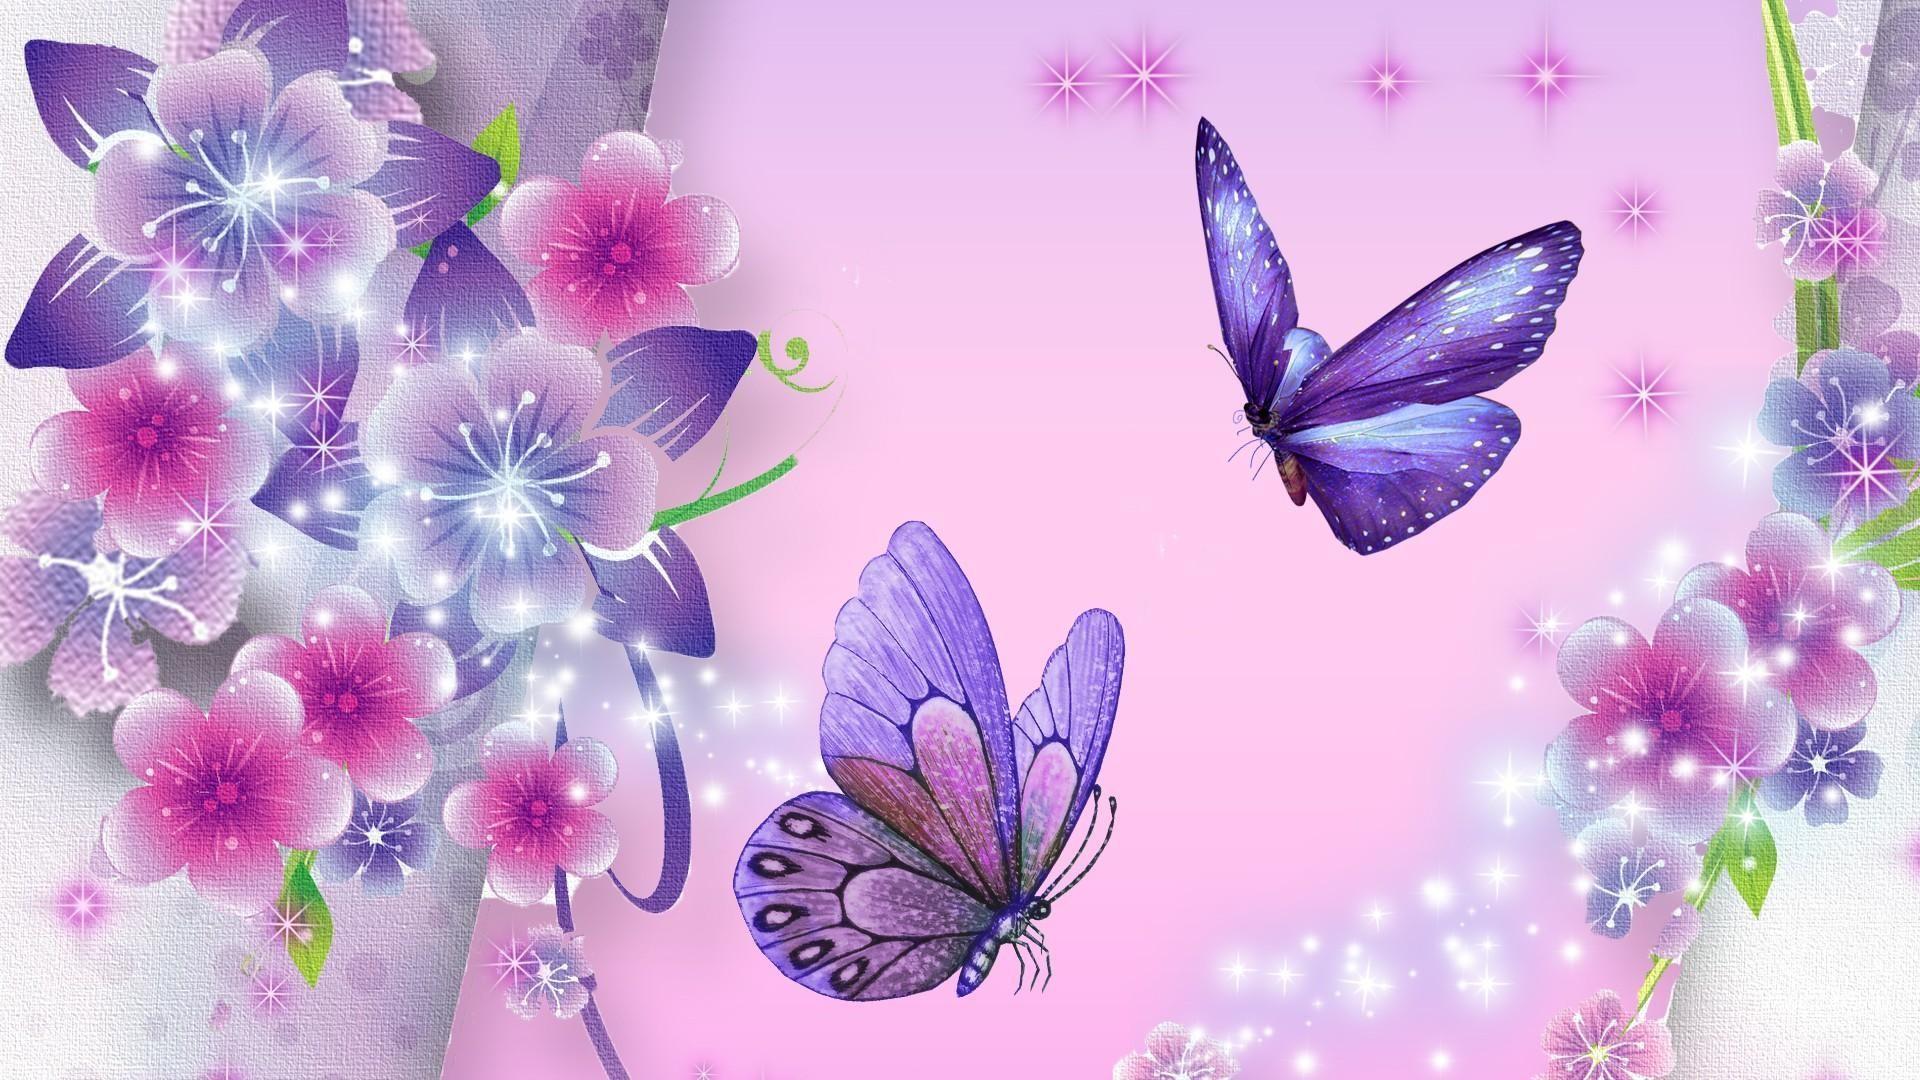 Ƹ̵̡Ӝ̵̨̄Ʒ borboletas lindas Ƹ̵̡Ӝ̵̨̄Ʒ